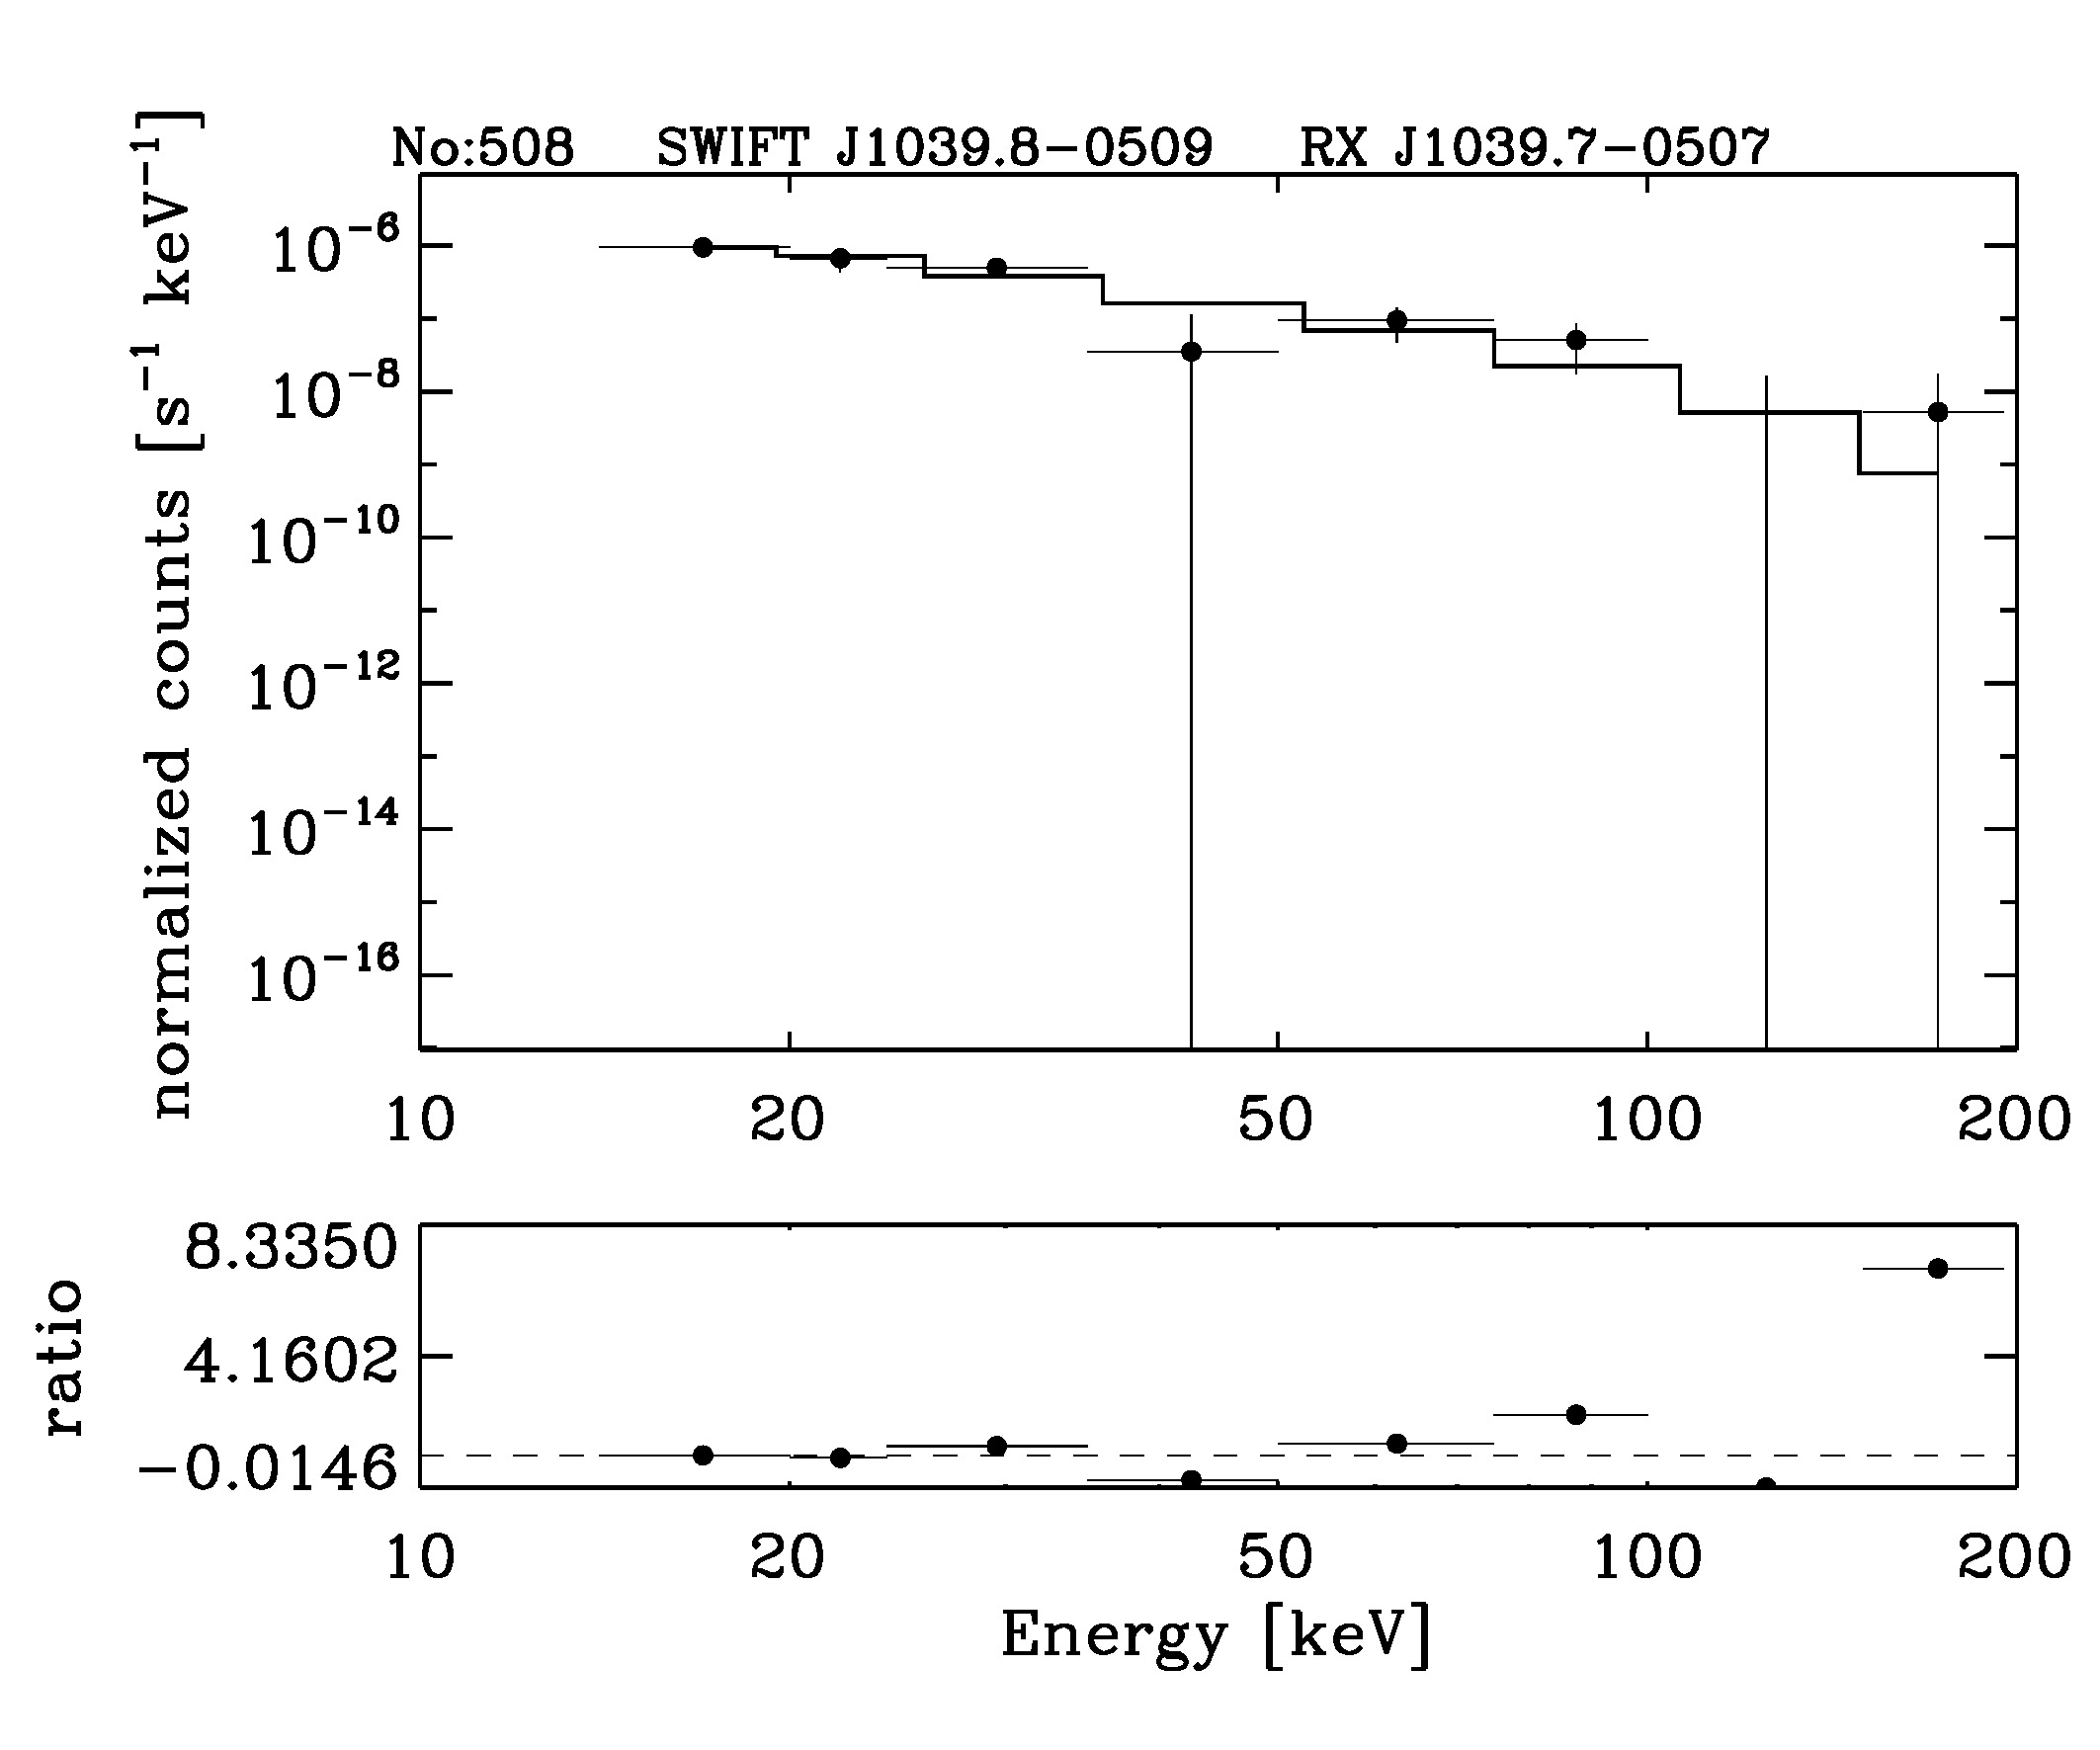 BAT Spectrum for SWIFT J1039.8-0509